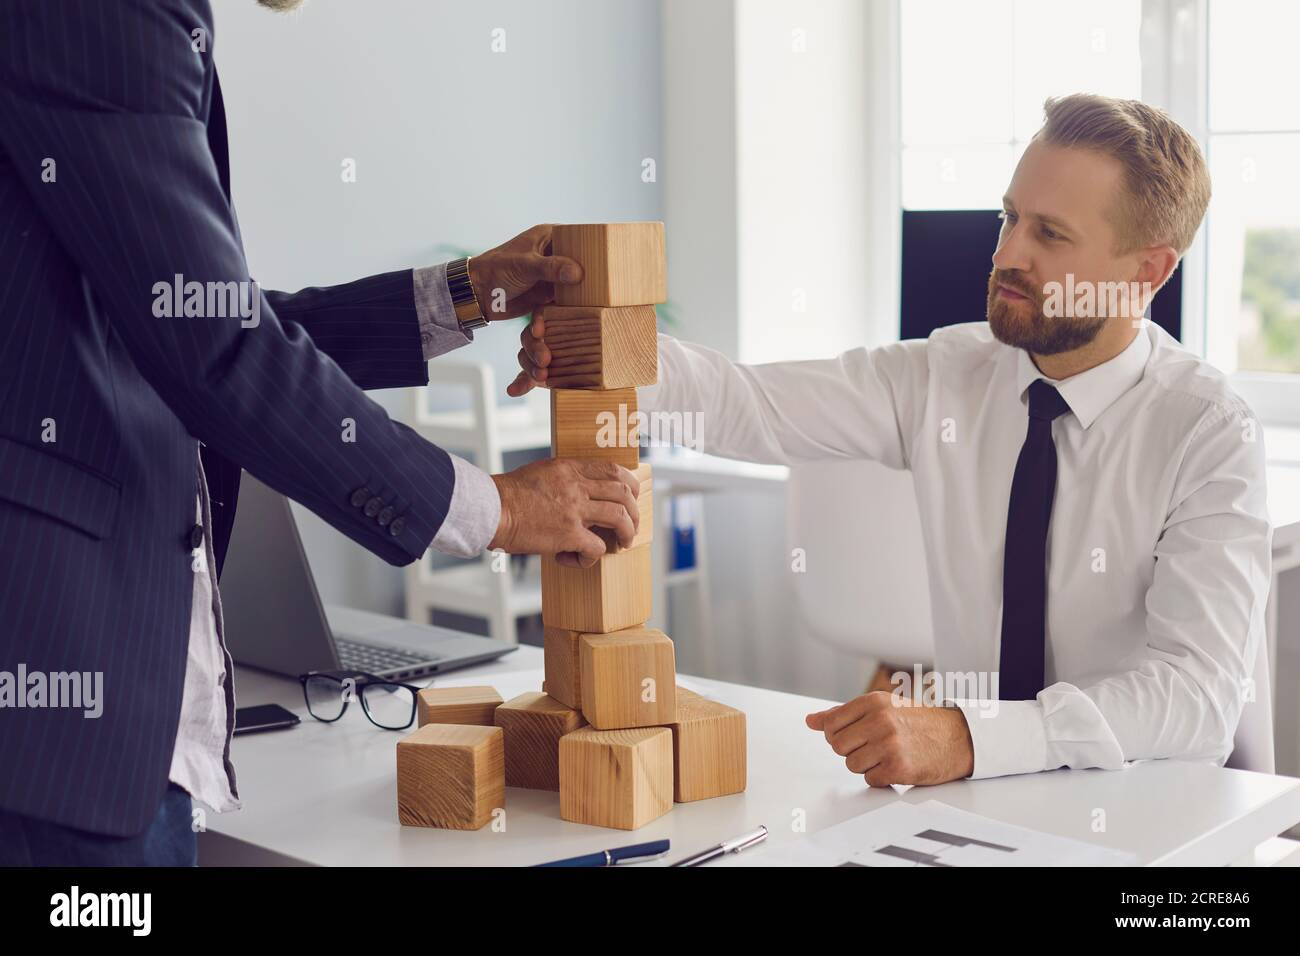 Les partenaires construisent ensemble une tour de blocs de bois sur une table de bureau et développent une stratégie pour les entreprises. Banque D'Images